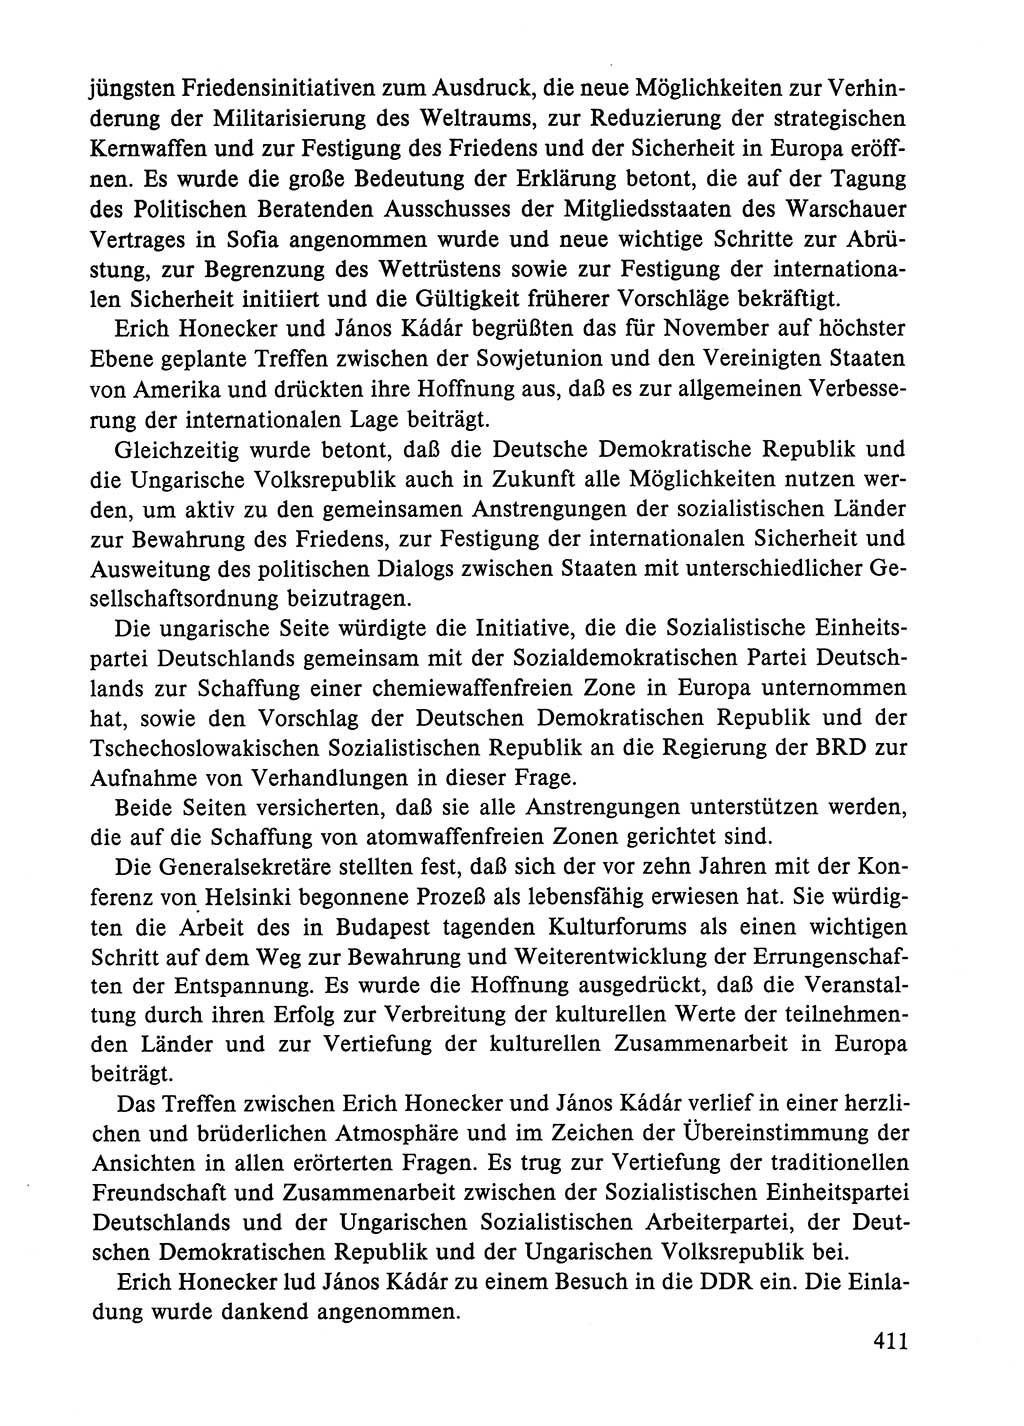 Dokumente der Sozialistischen Einheitspartei Deutschlands (SED) [Deutsche Demokratische Republik (DDR)] 1984-1985, Seite 411 (Dok. SED DDR 1984-1985, S. 411)